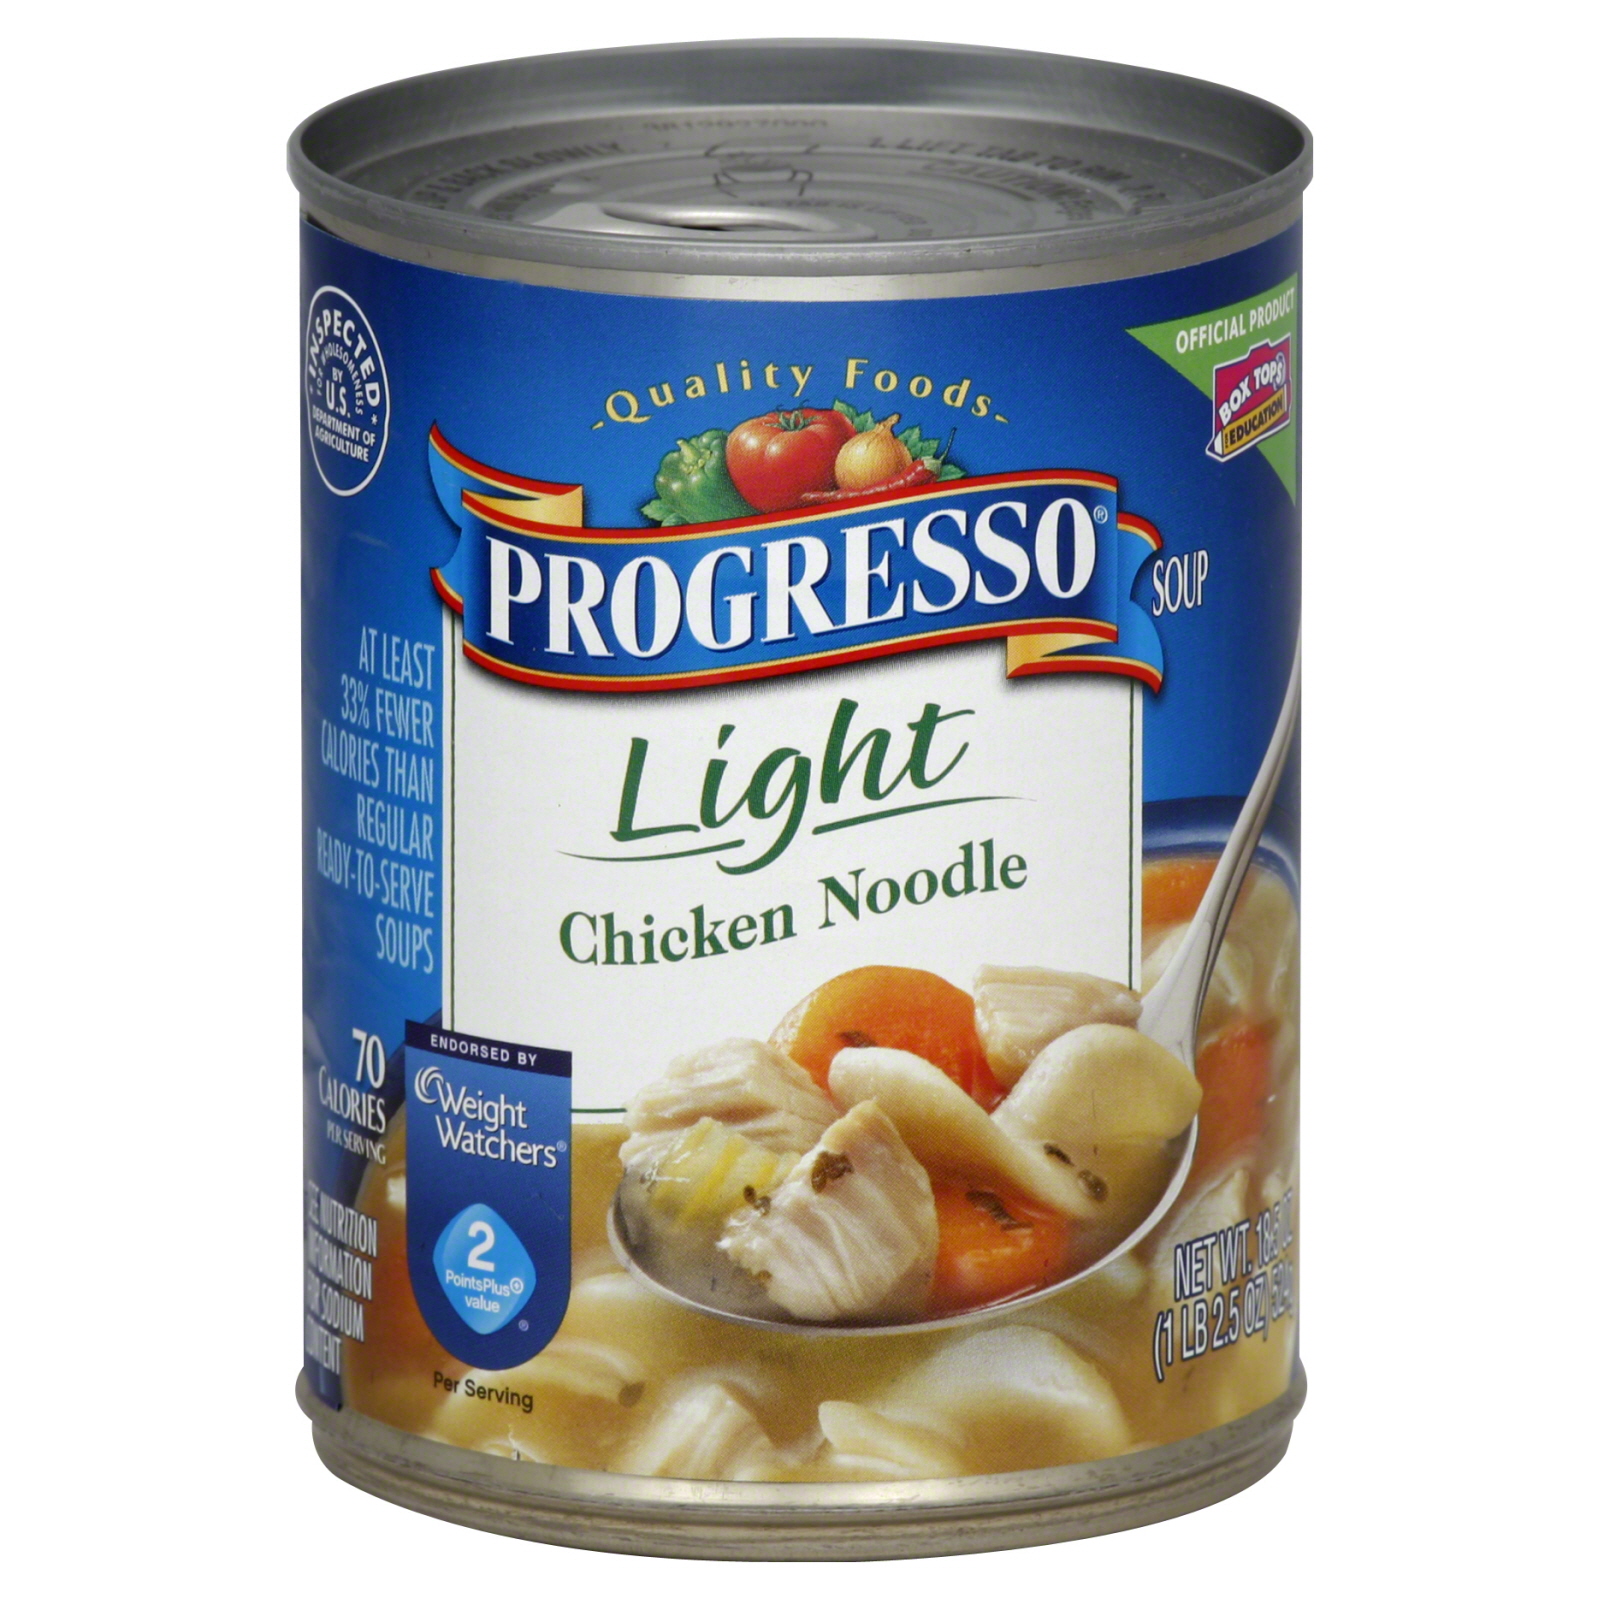 Progresso Light Soup, Chicken Noodle, 18.5 oz (1 lb 2.5 oz) 524 g